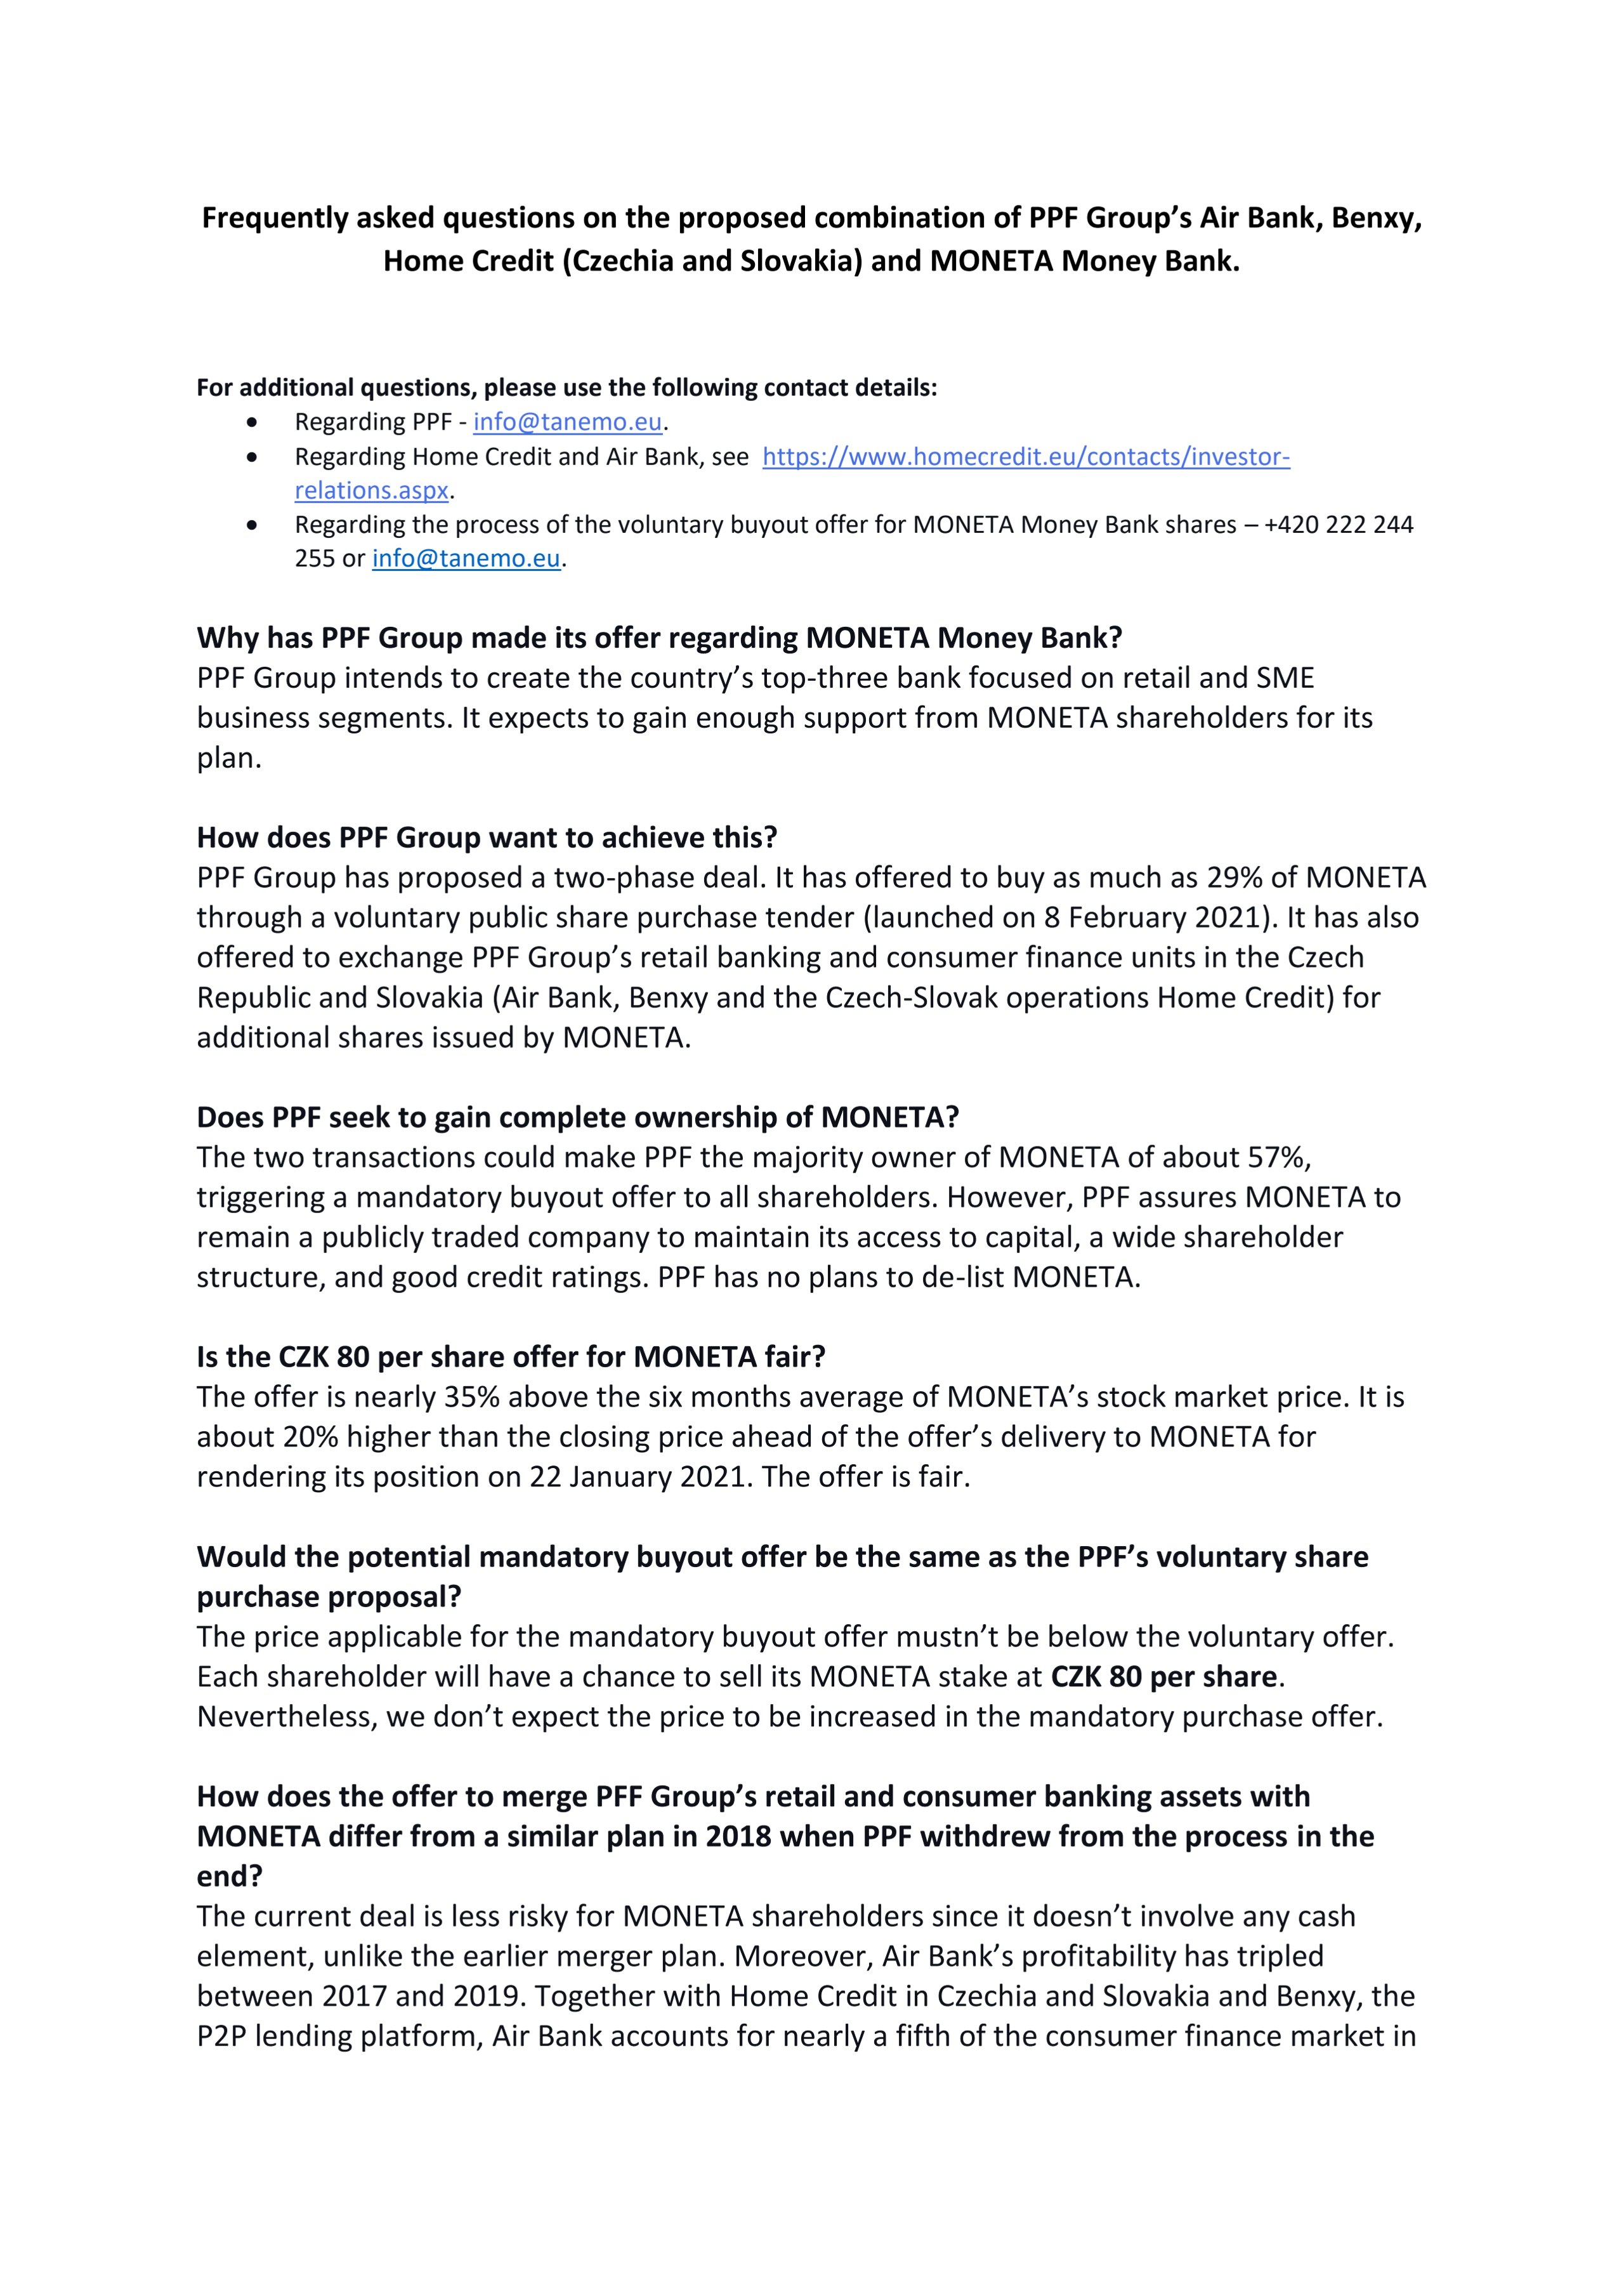 FAQ on the PPF offer to MONETA Money Bank’s shareholders